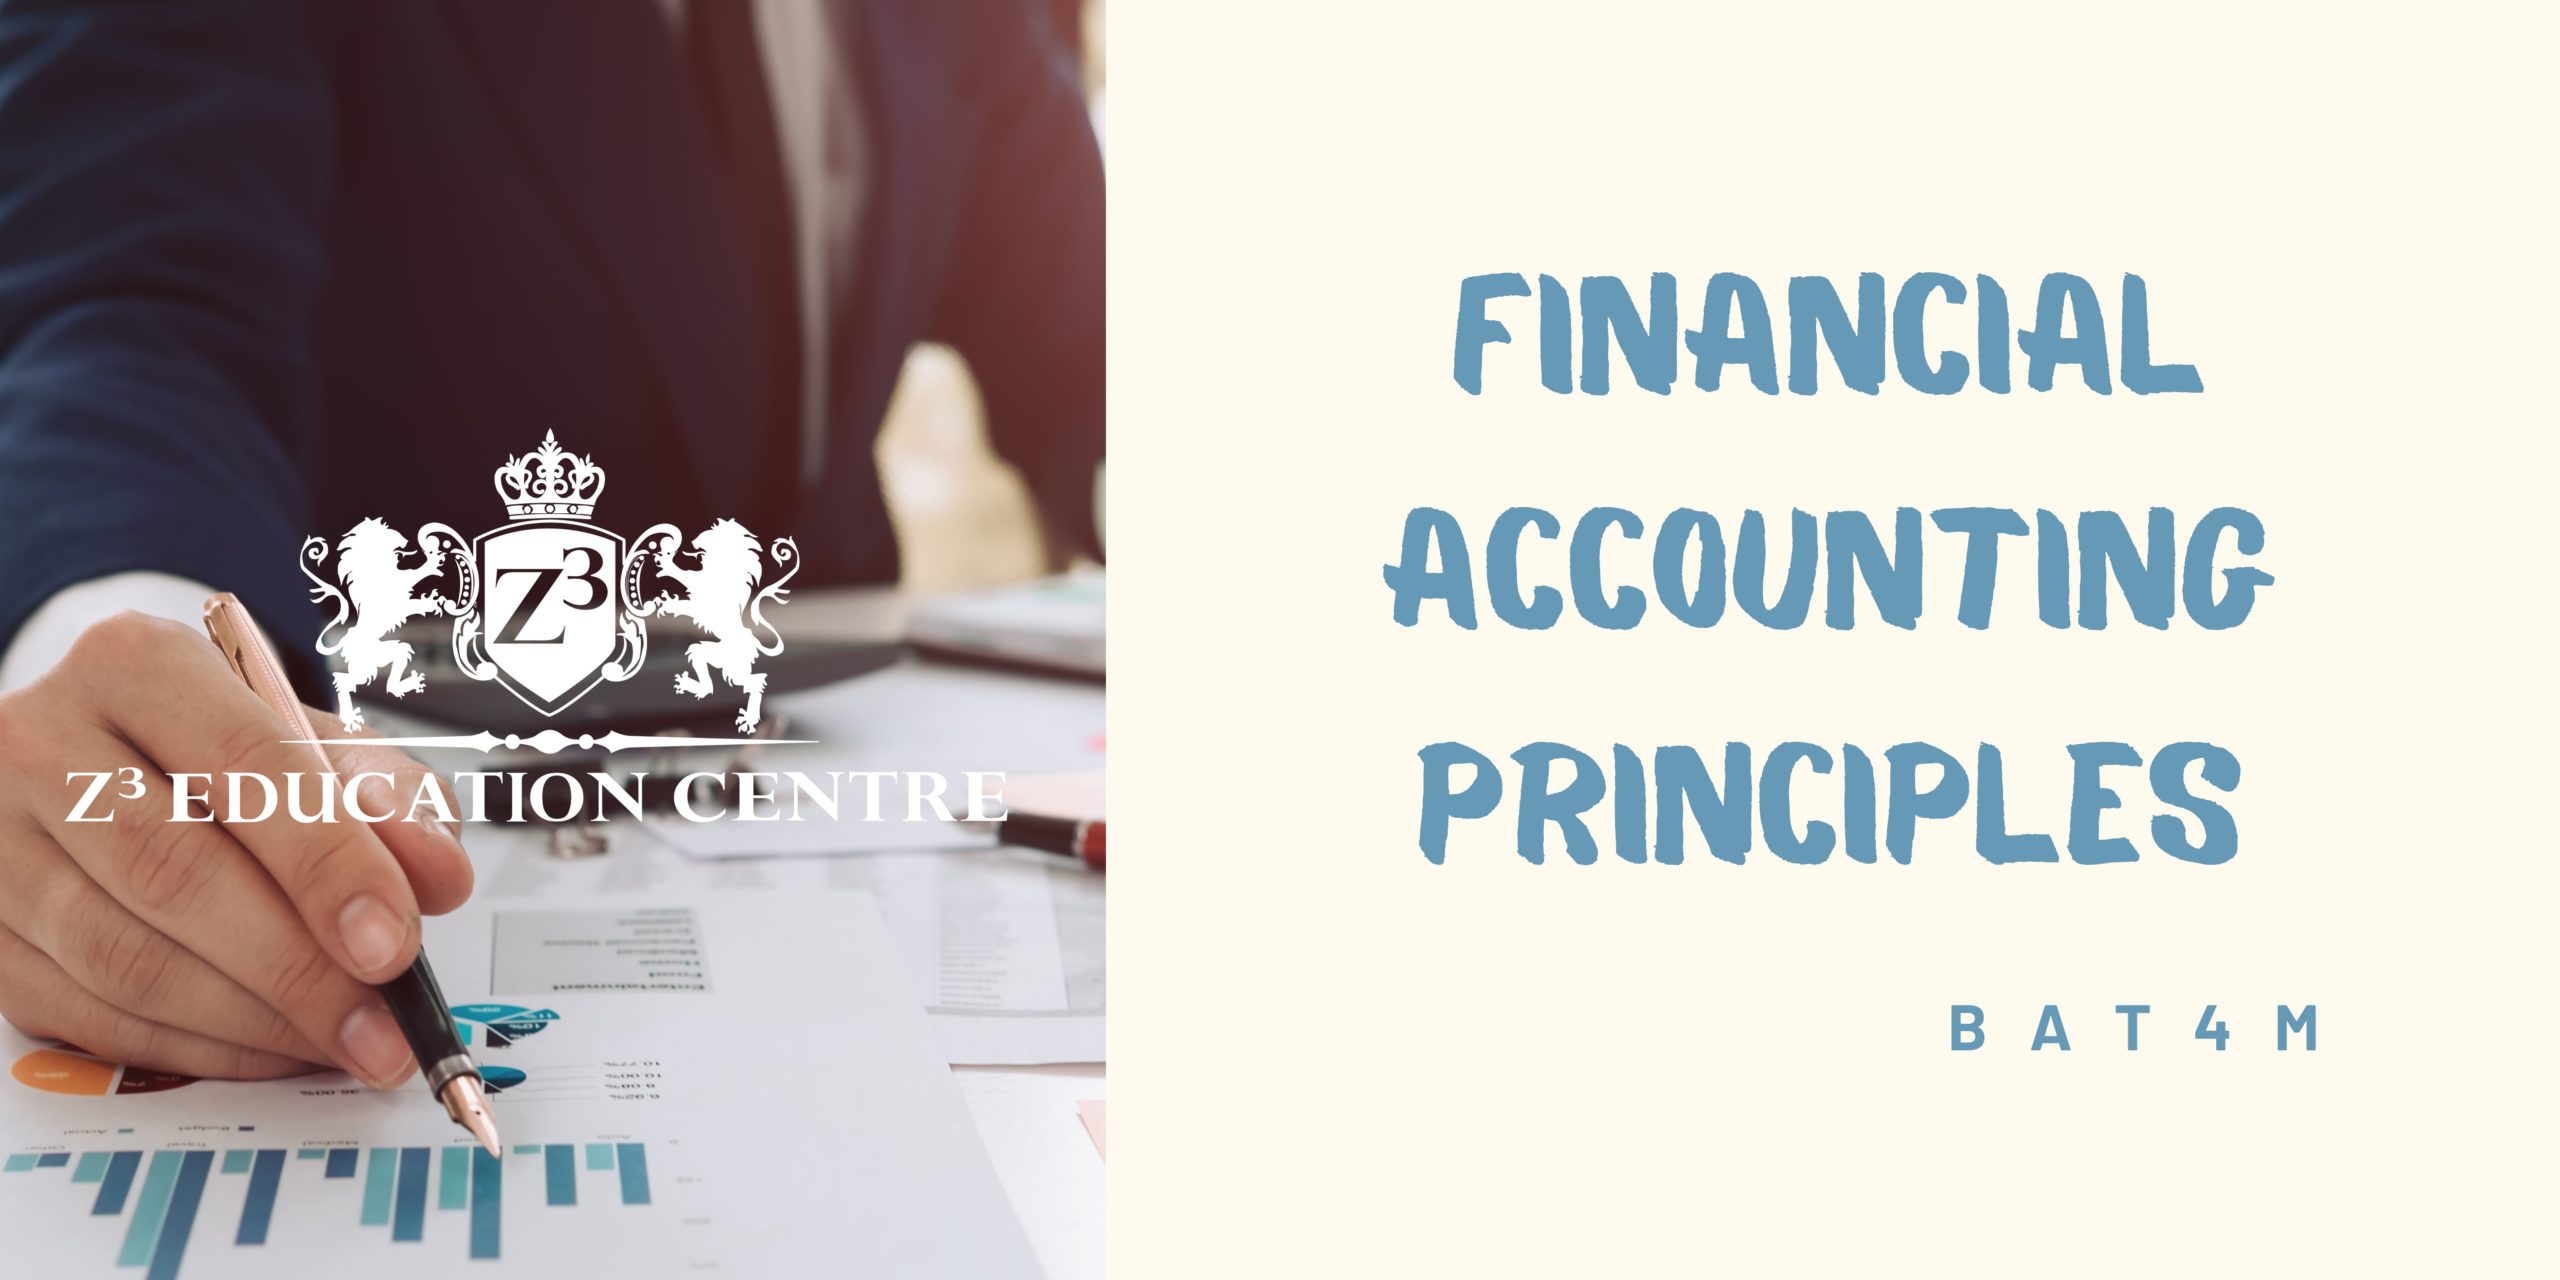 Financial Accounting Principles Image